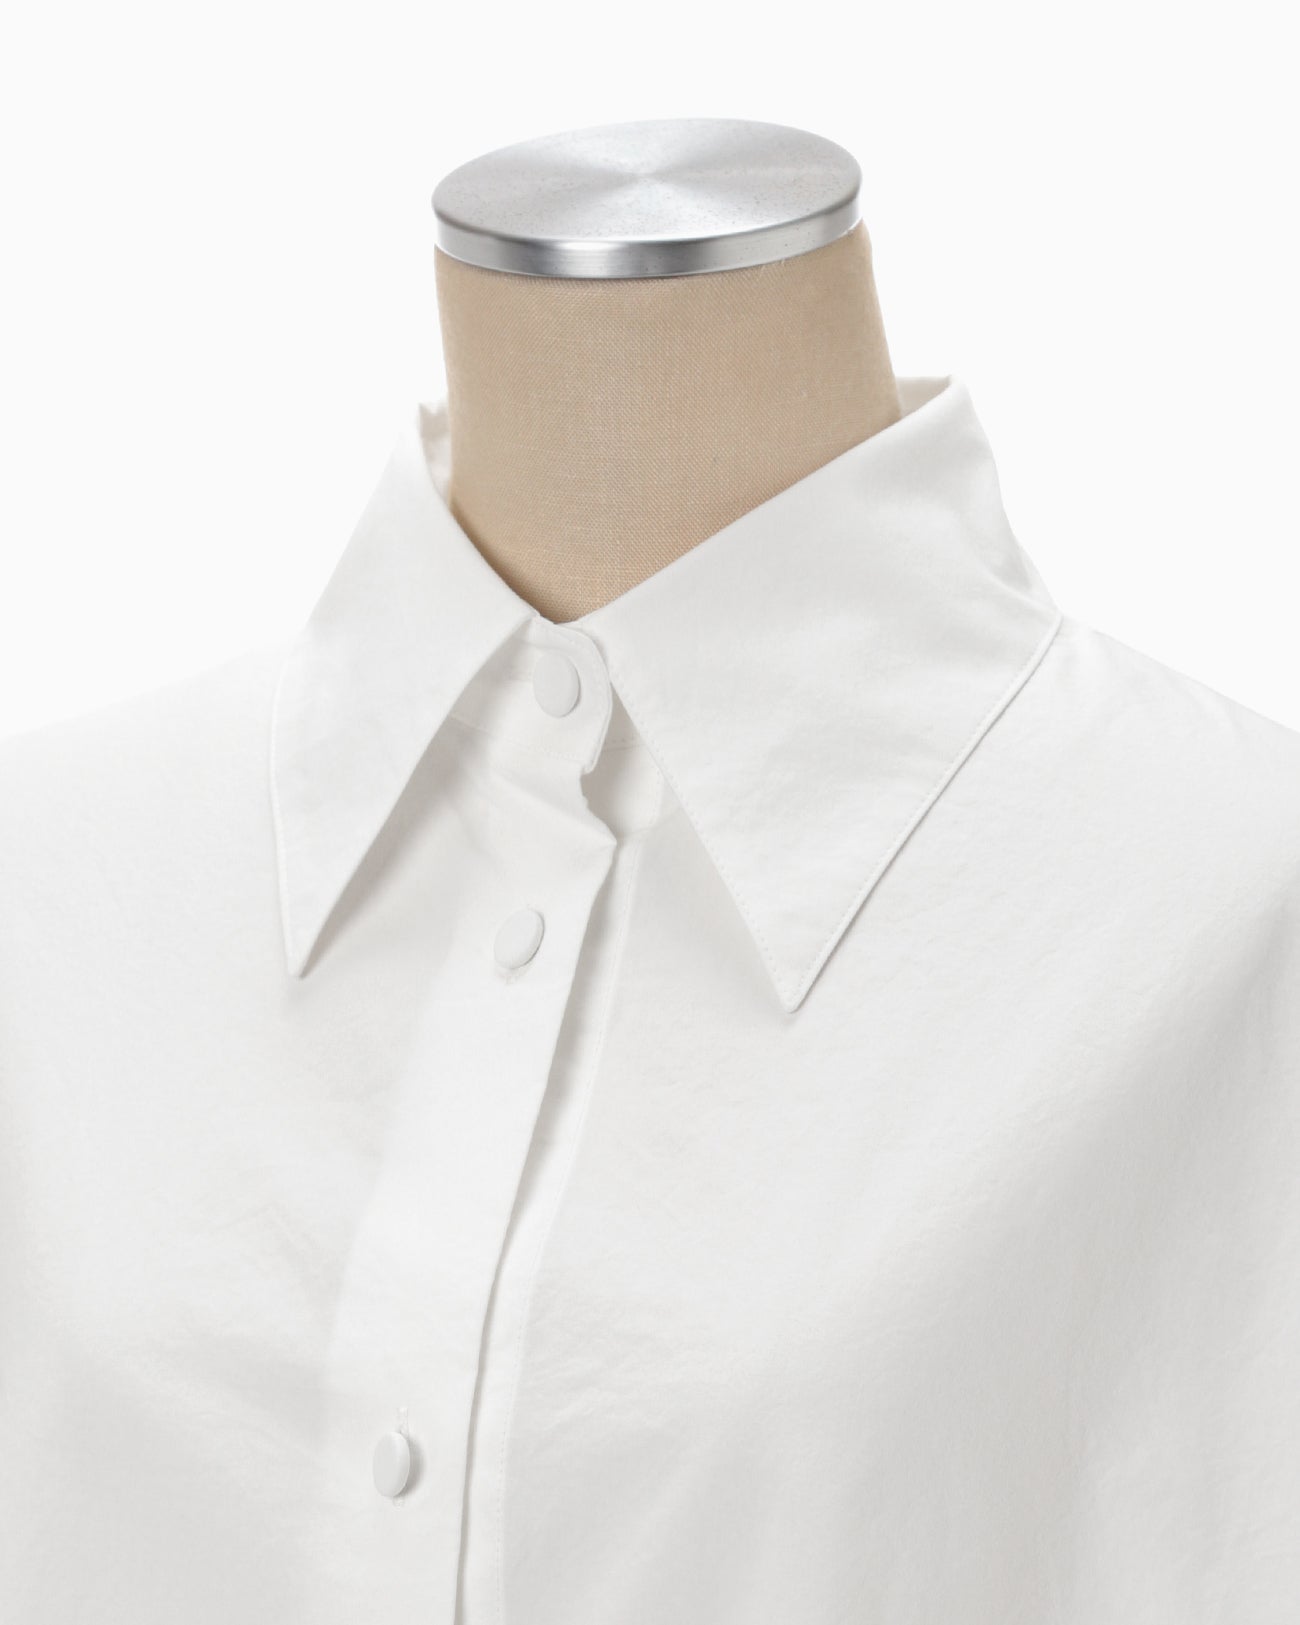 Nidom Cotton Oversized Shirt - white